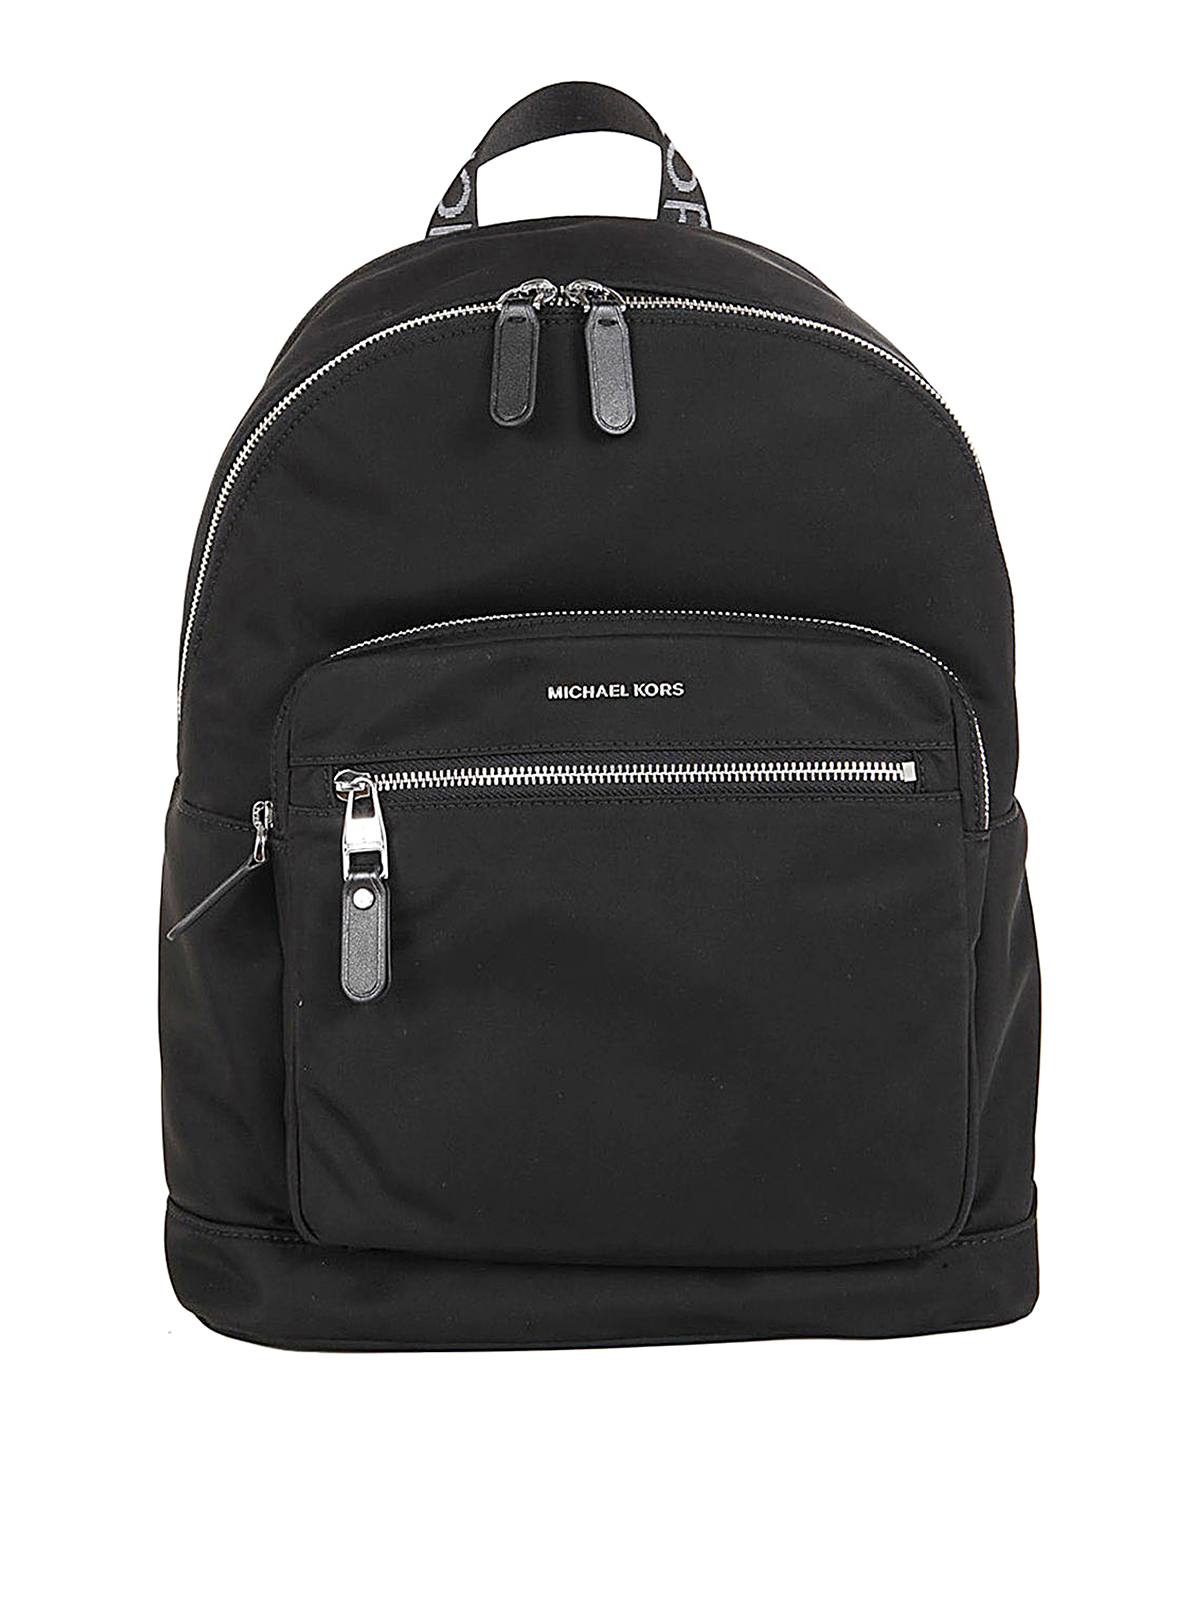 Backpacks Michael Kors - Commuter backpack - 33F0LHDB8O001 